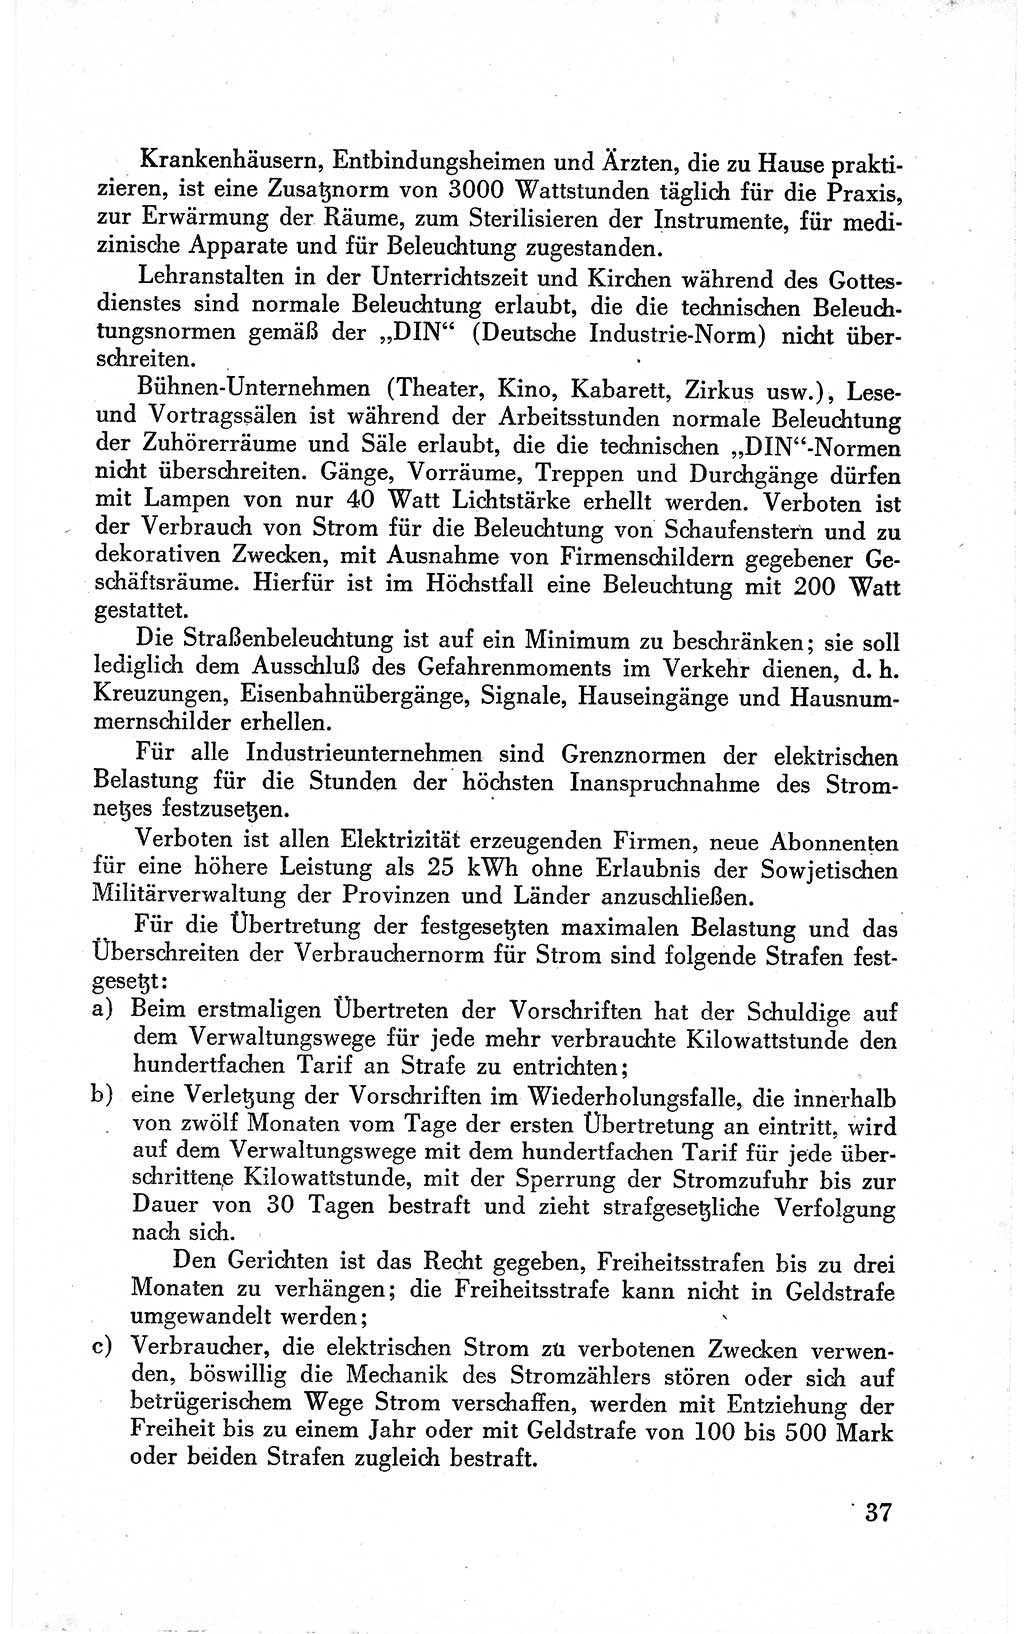 Befehle des Obersten Chefs der Sowjetischen Miltärverwaltung (SMV) in Deutschland - Aus dem Stab der Sowjetischen Militärverwaltung in Deutschland 1946 (Bef. SMV Dtl. 1946, S. 37)